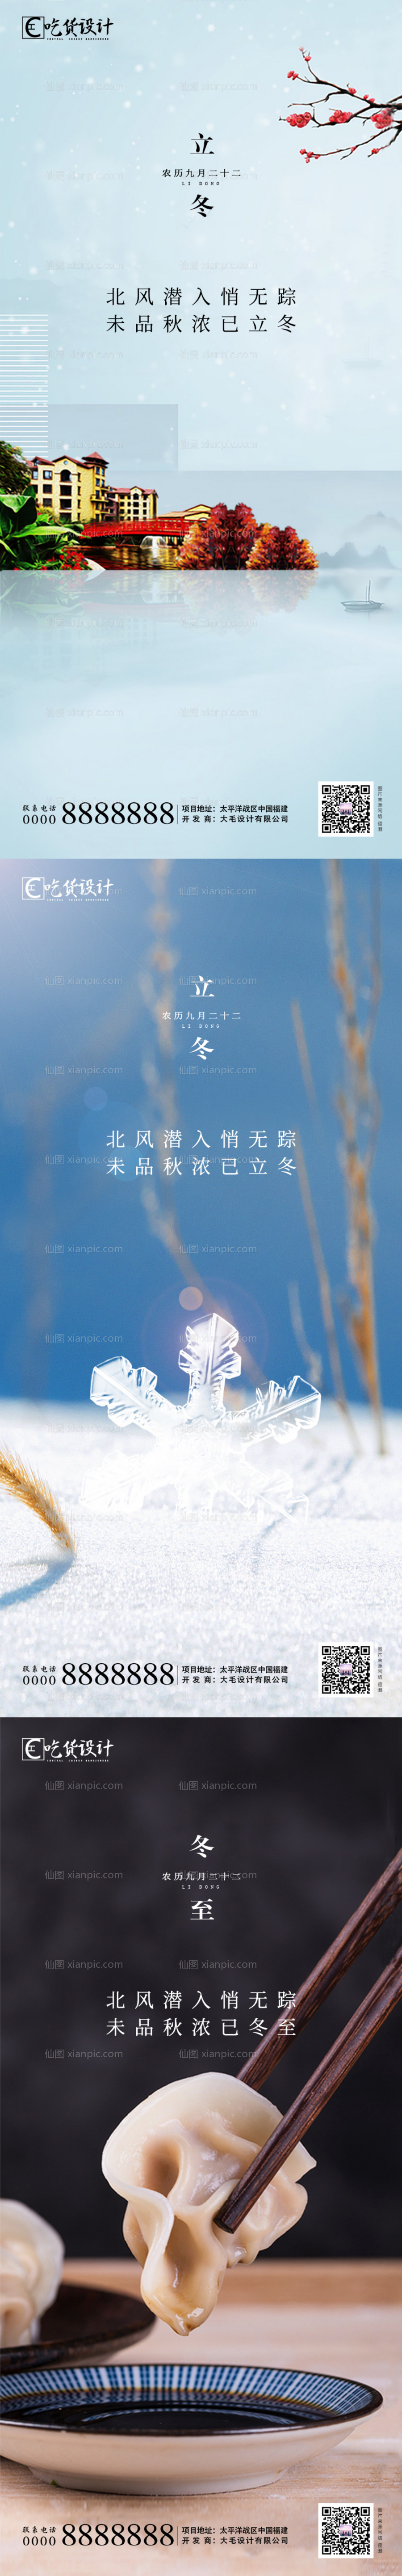 素材乐-立冬节气系列海报